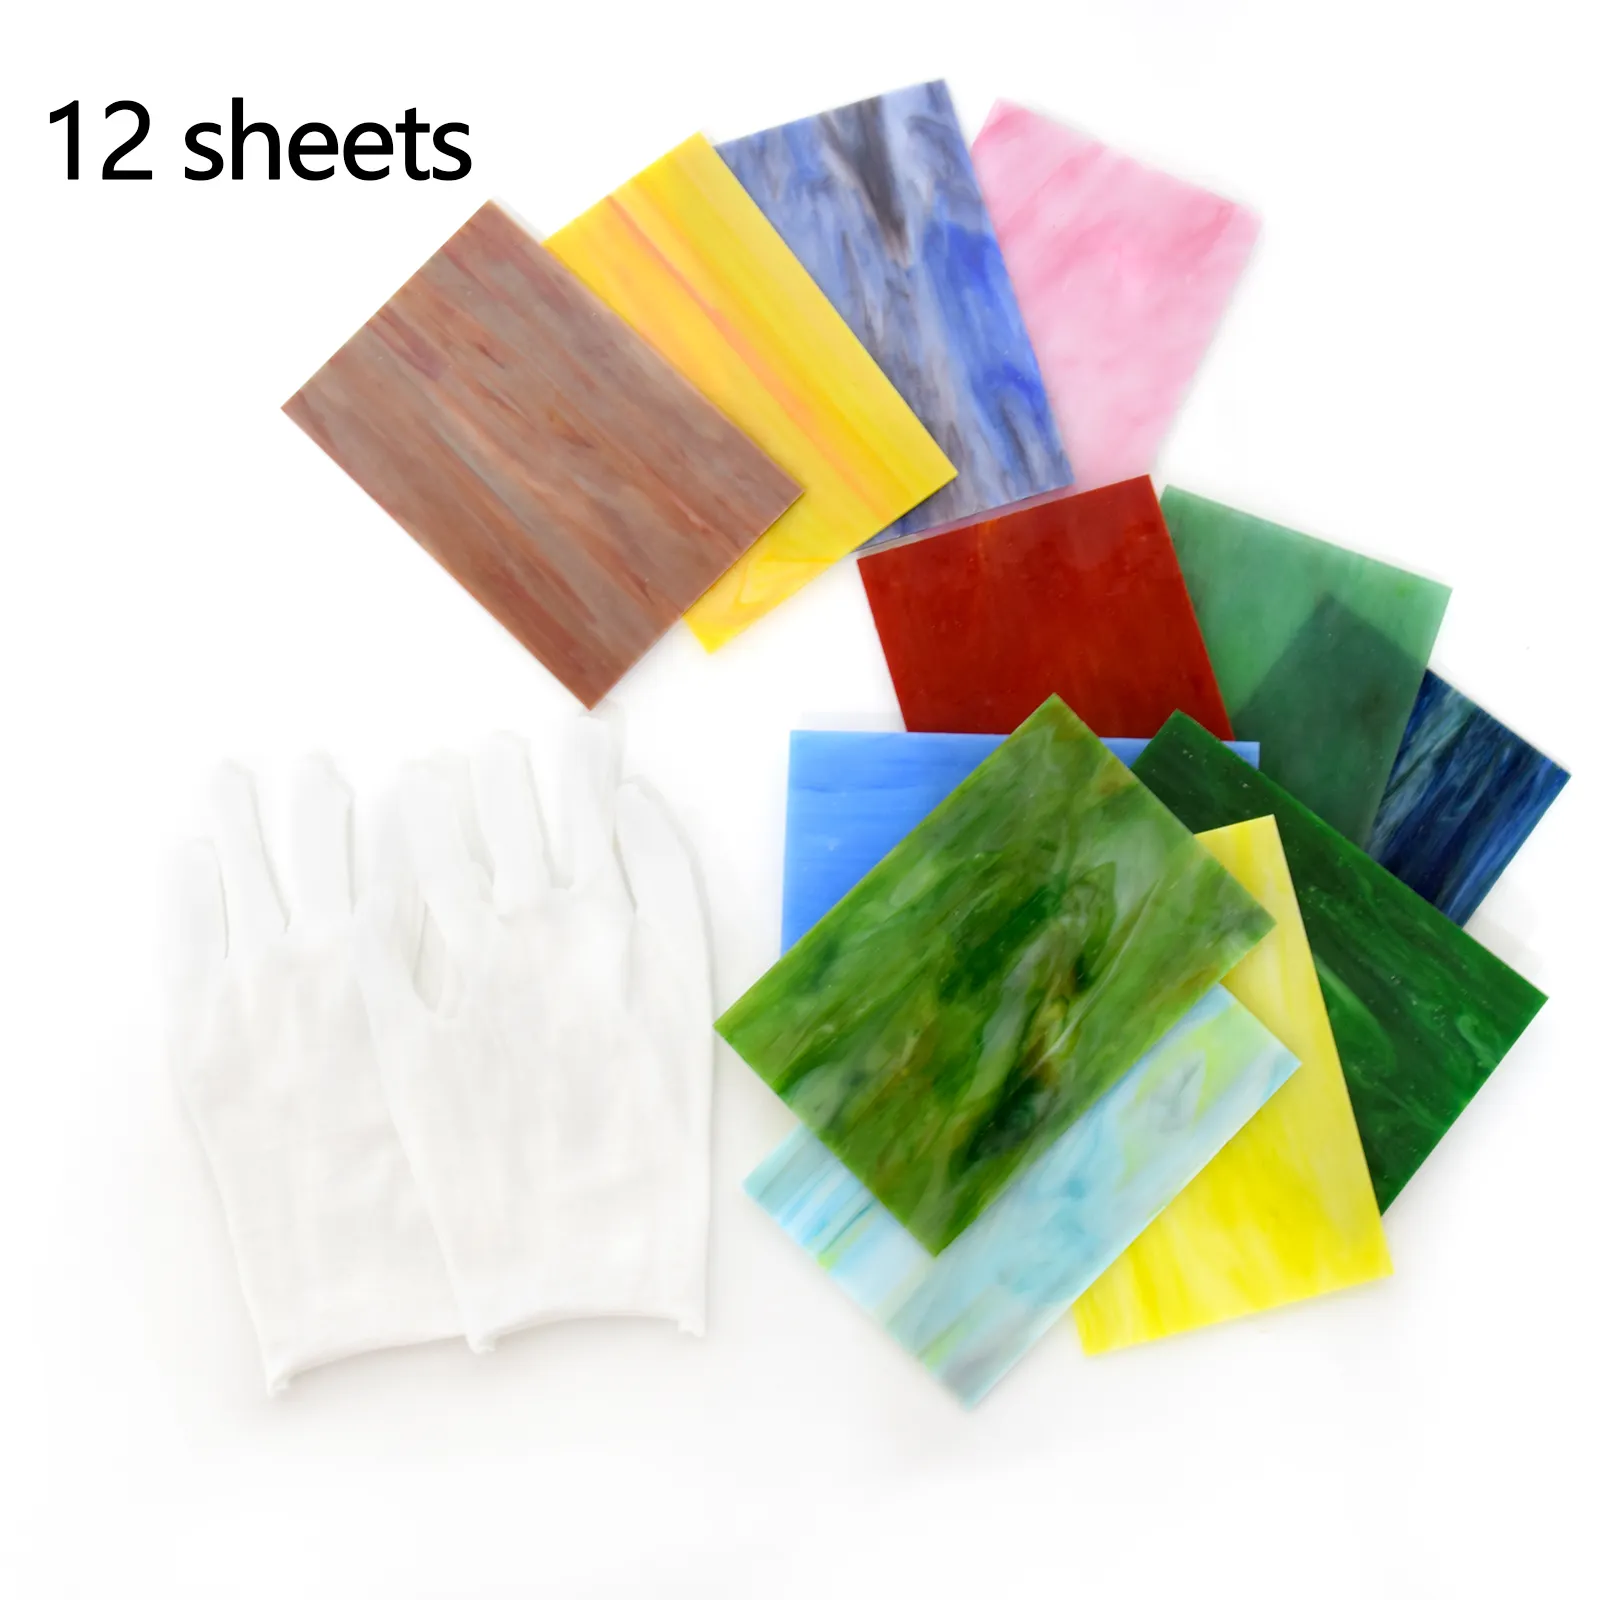 Hochwertige Glasmalerei Werkzeuge und liefert verschiedene Farben 3mm klare Glimmer Glasmalerei Blatt gemischte Textur Kunst glas